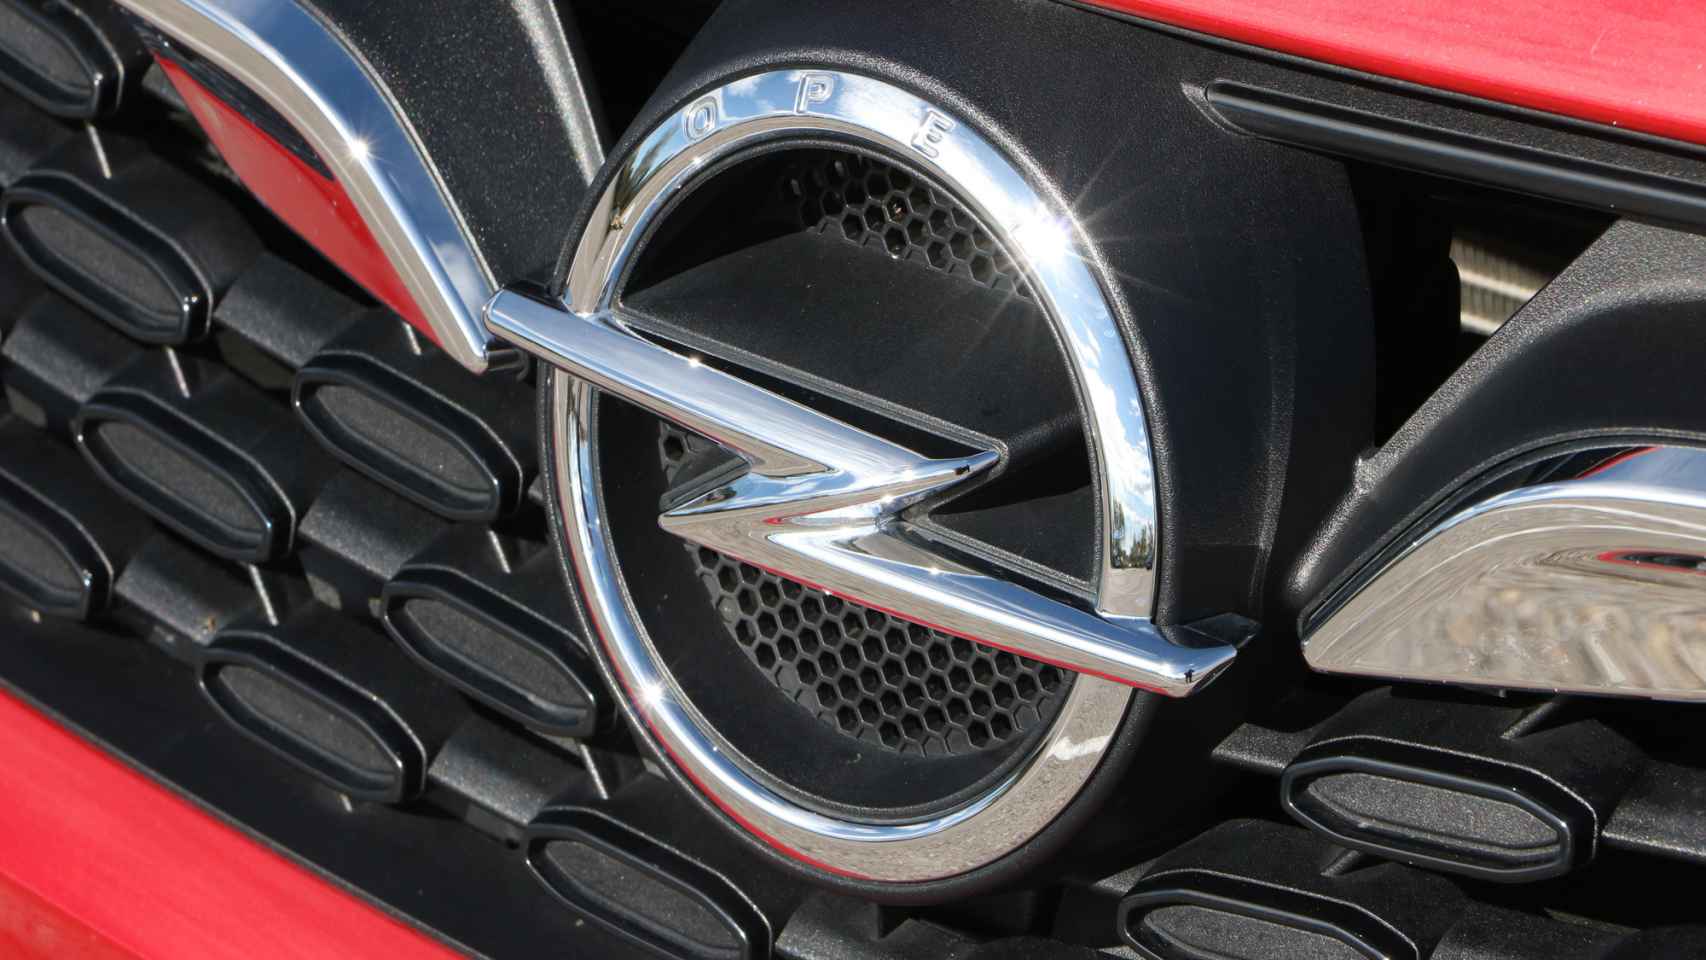 Emblema de Opel en el frontal del Astra, que recibe un nuevo diseño.